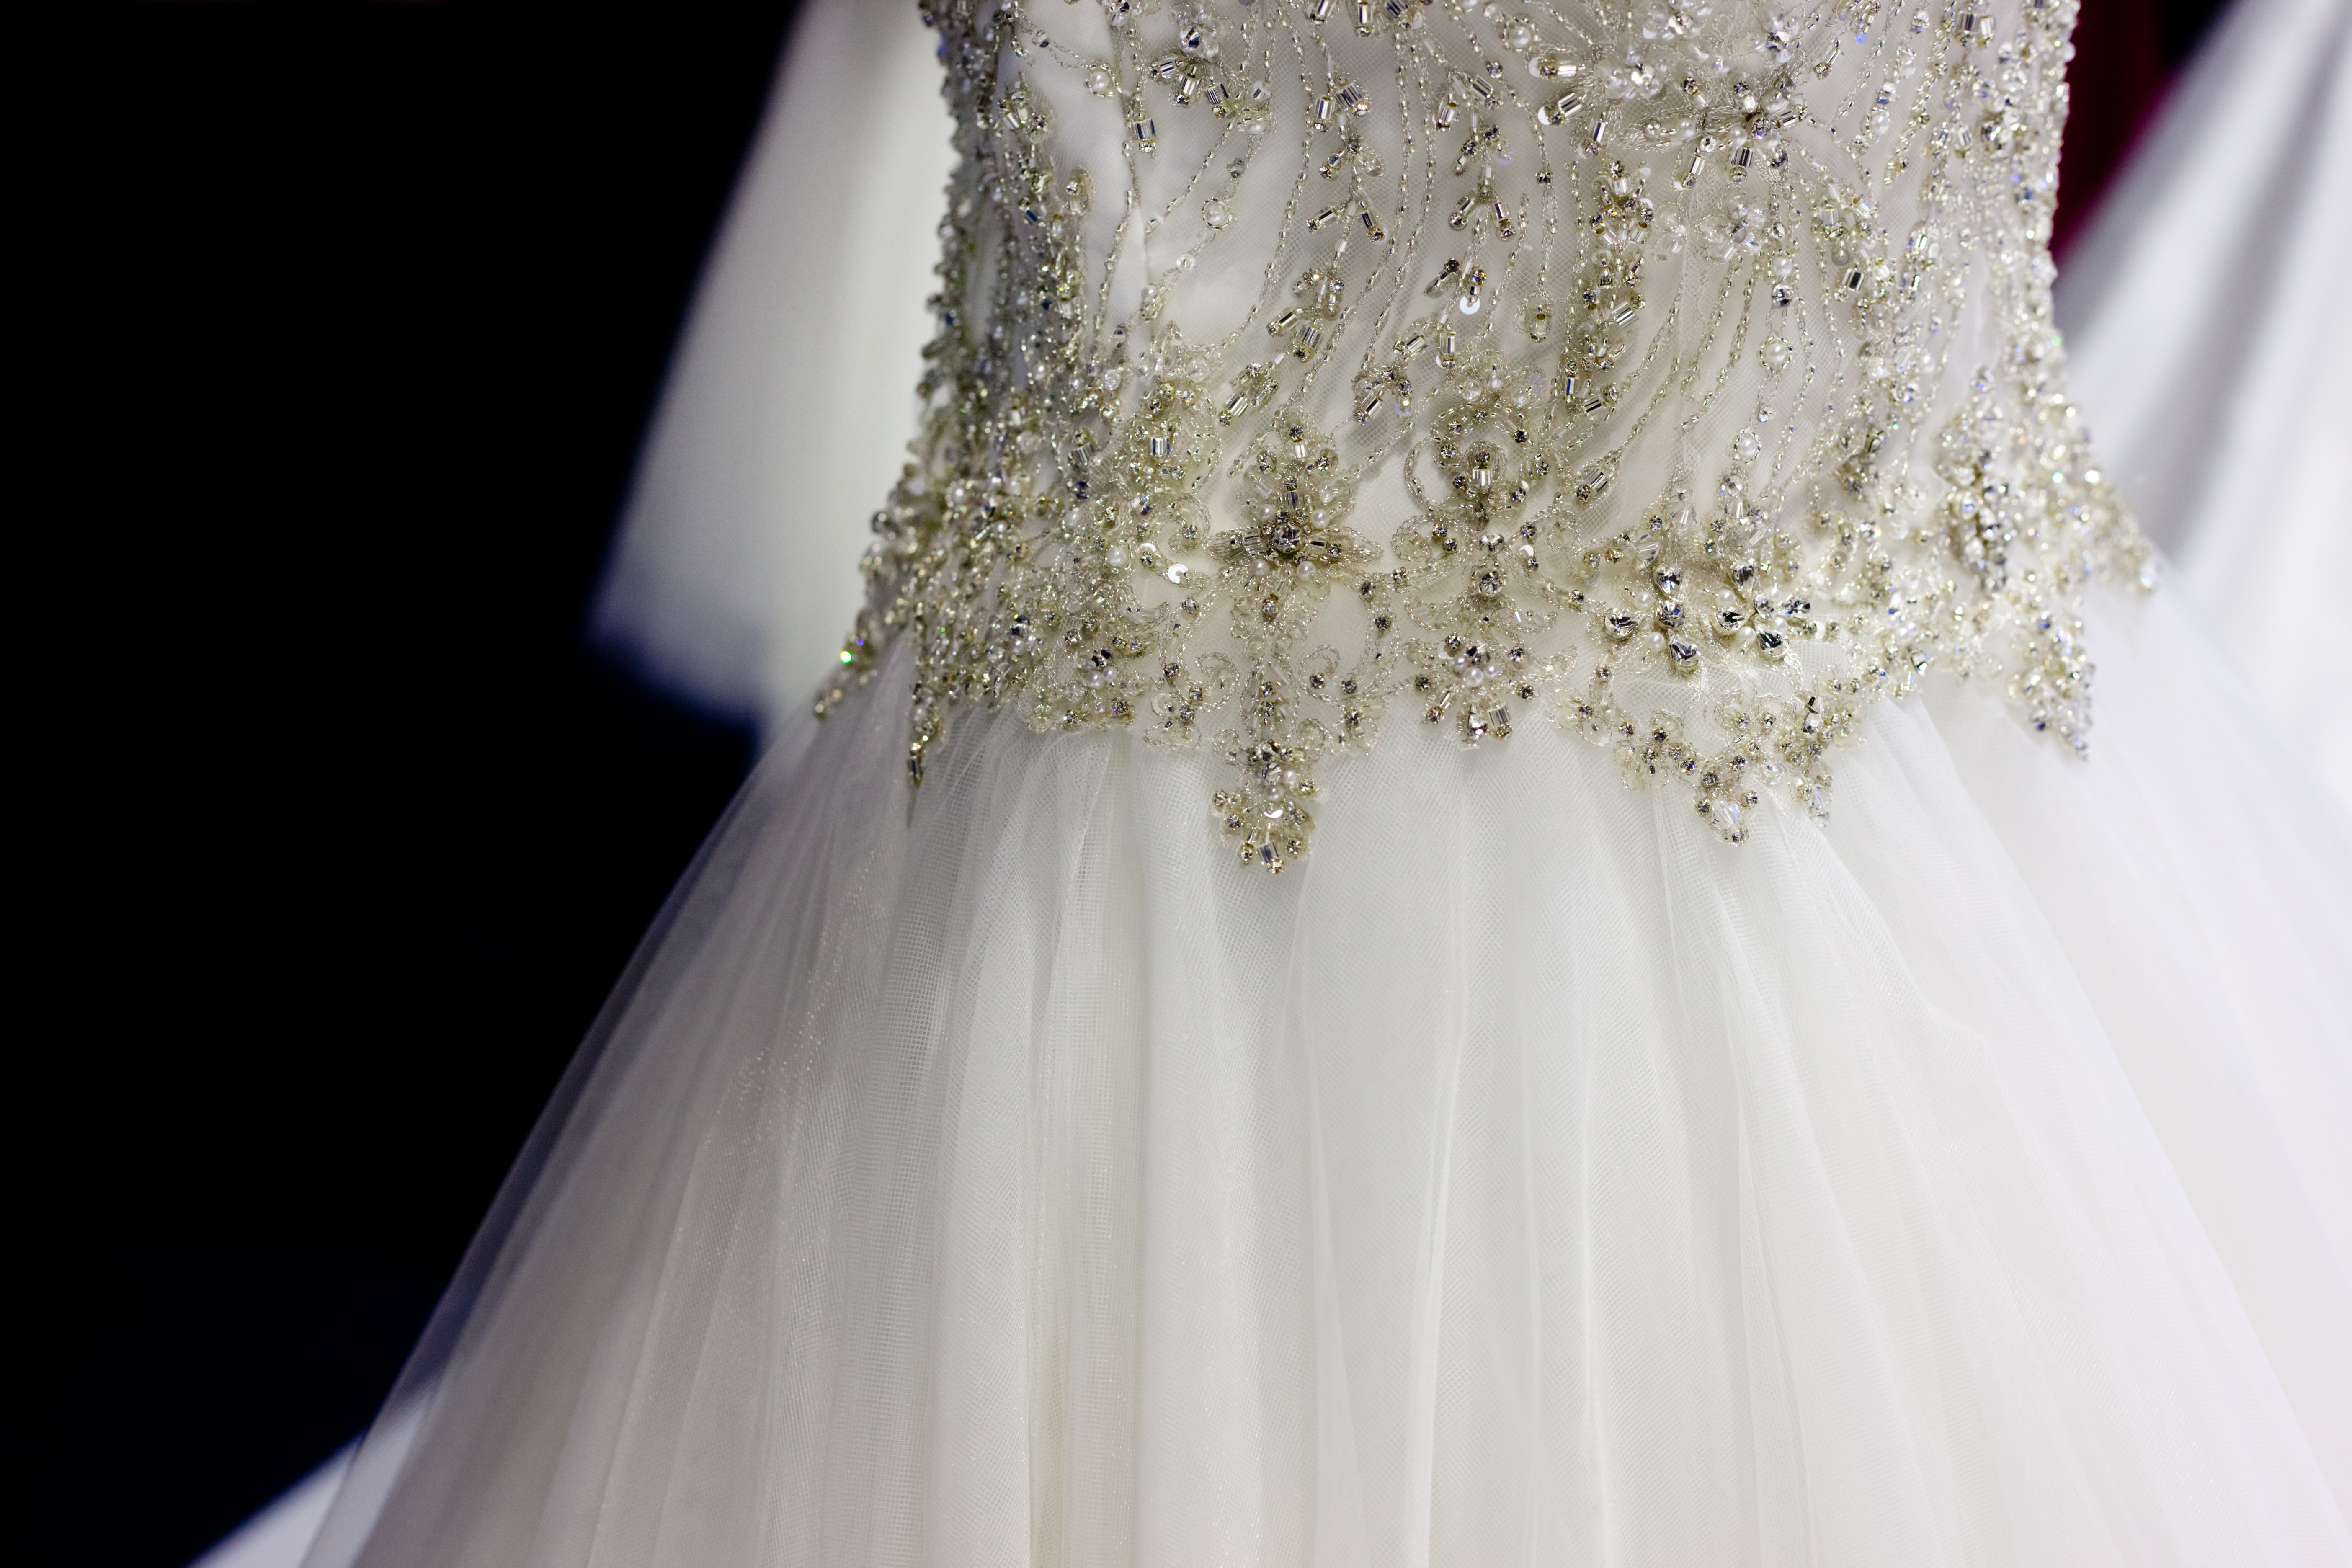 La mère du marié a insisté pour porter une robe blanche au mariage. | Source : Shutterstock